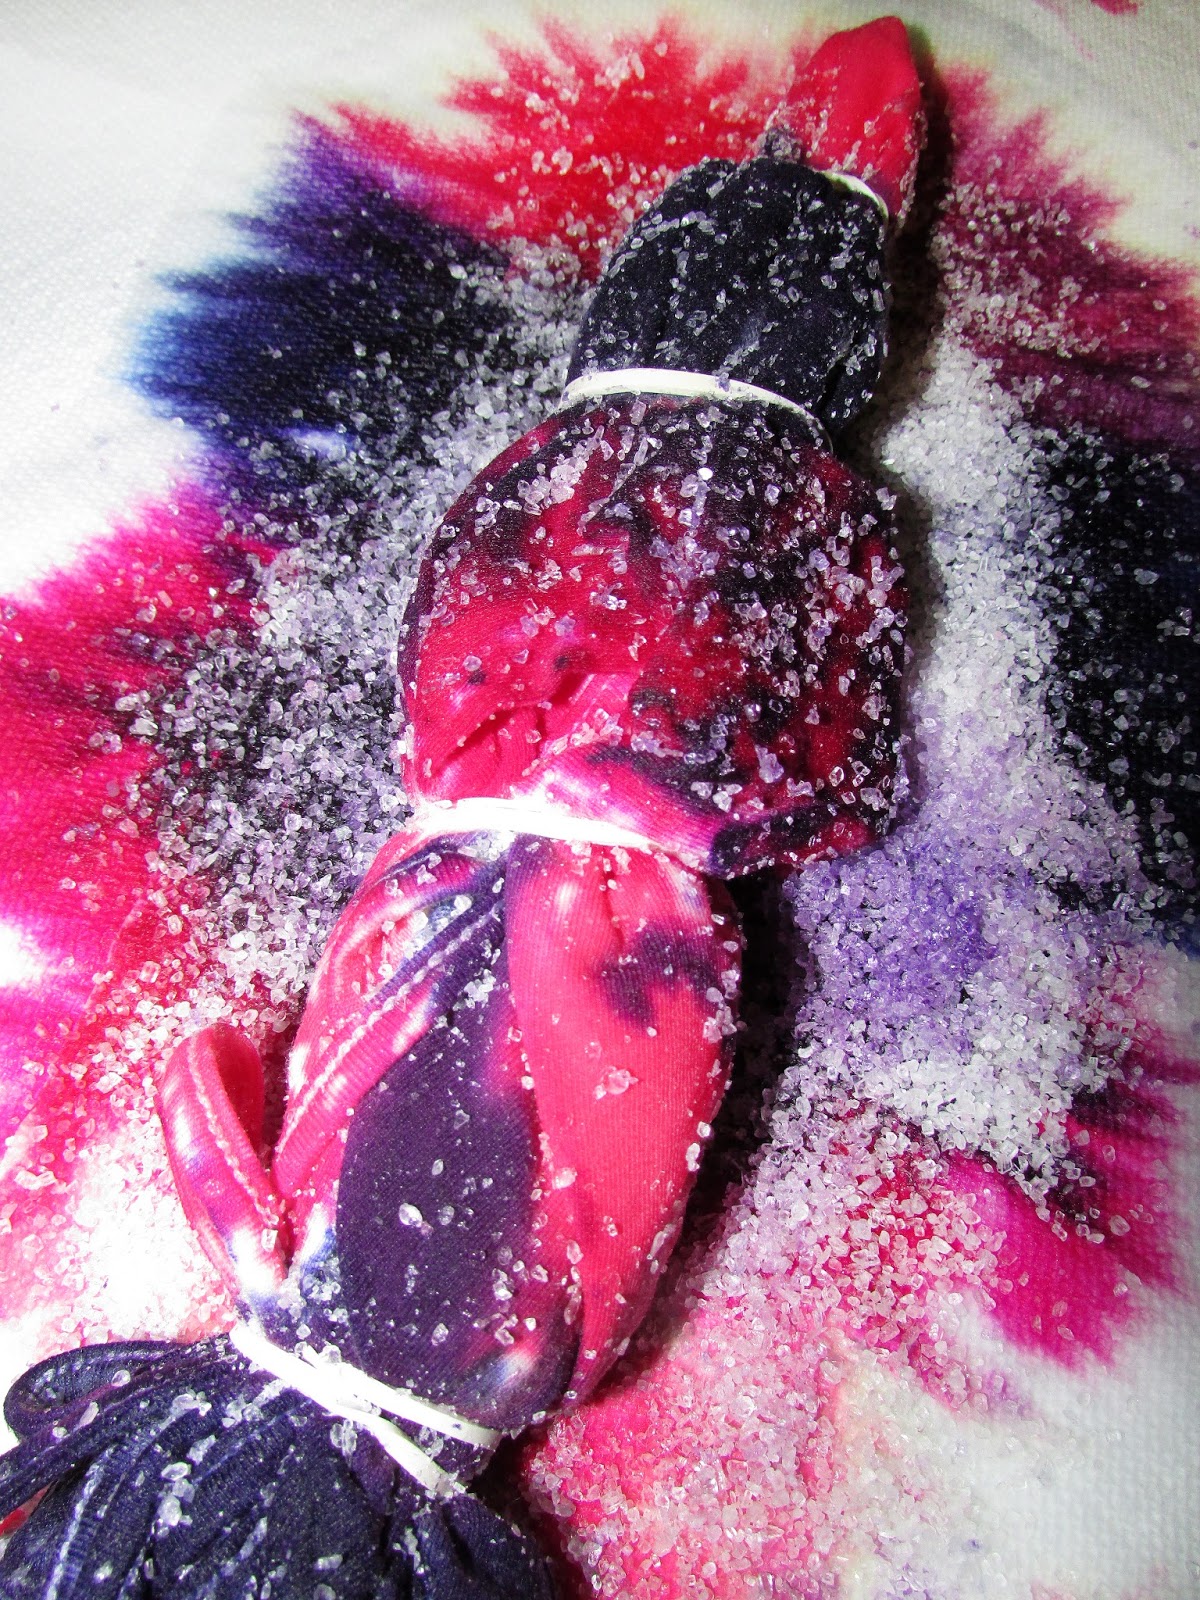 For the Love of Food: DIY Salt Resist Tie Dye Crafts